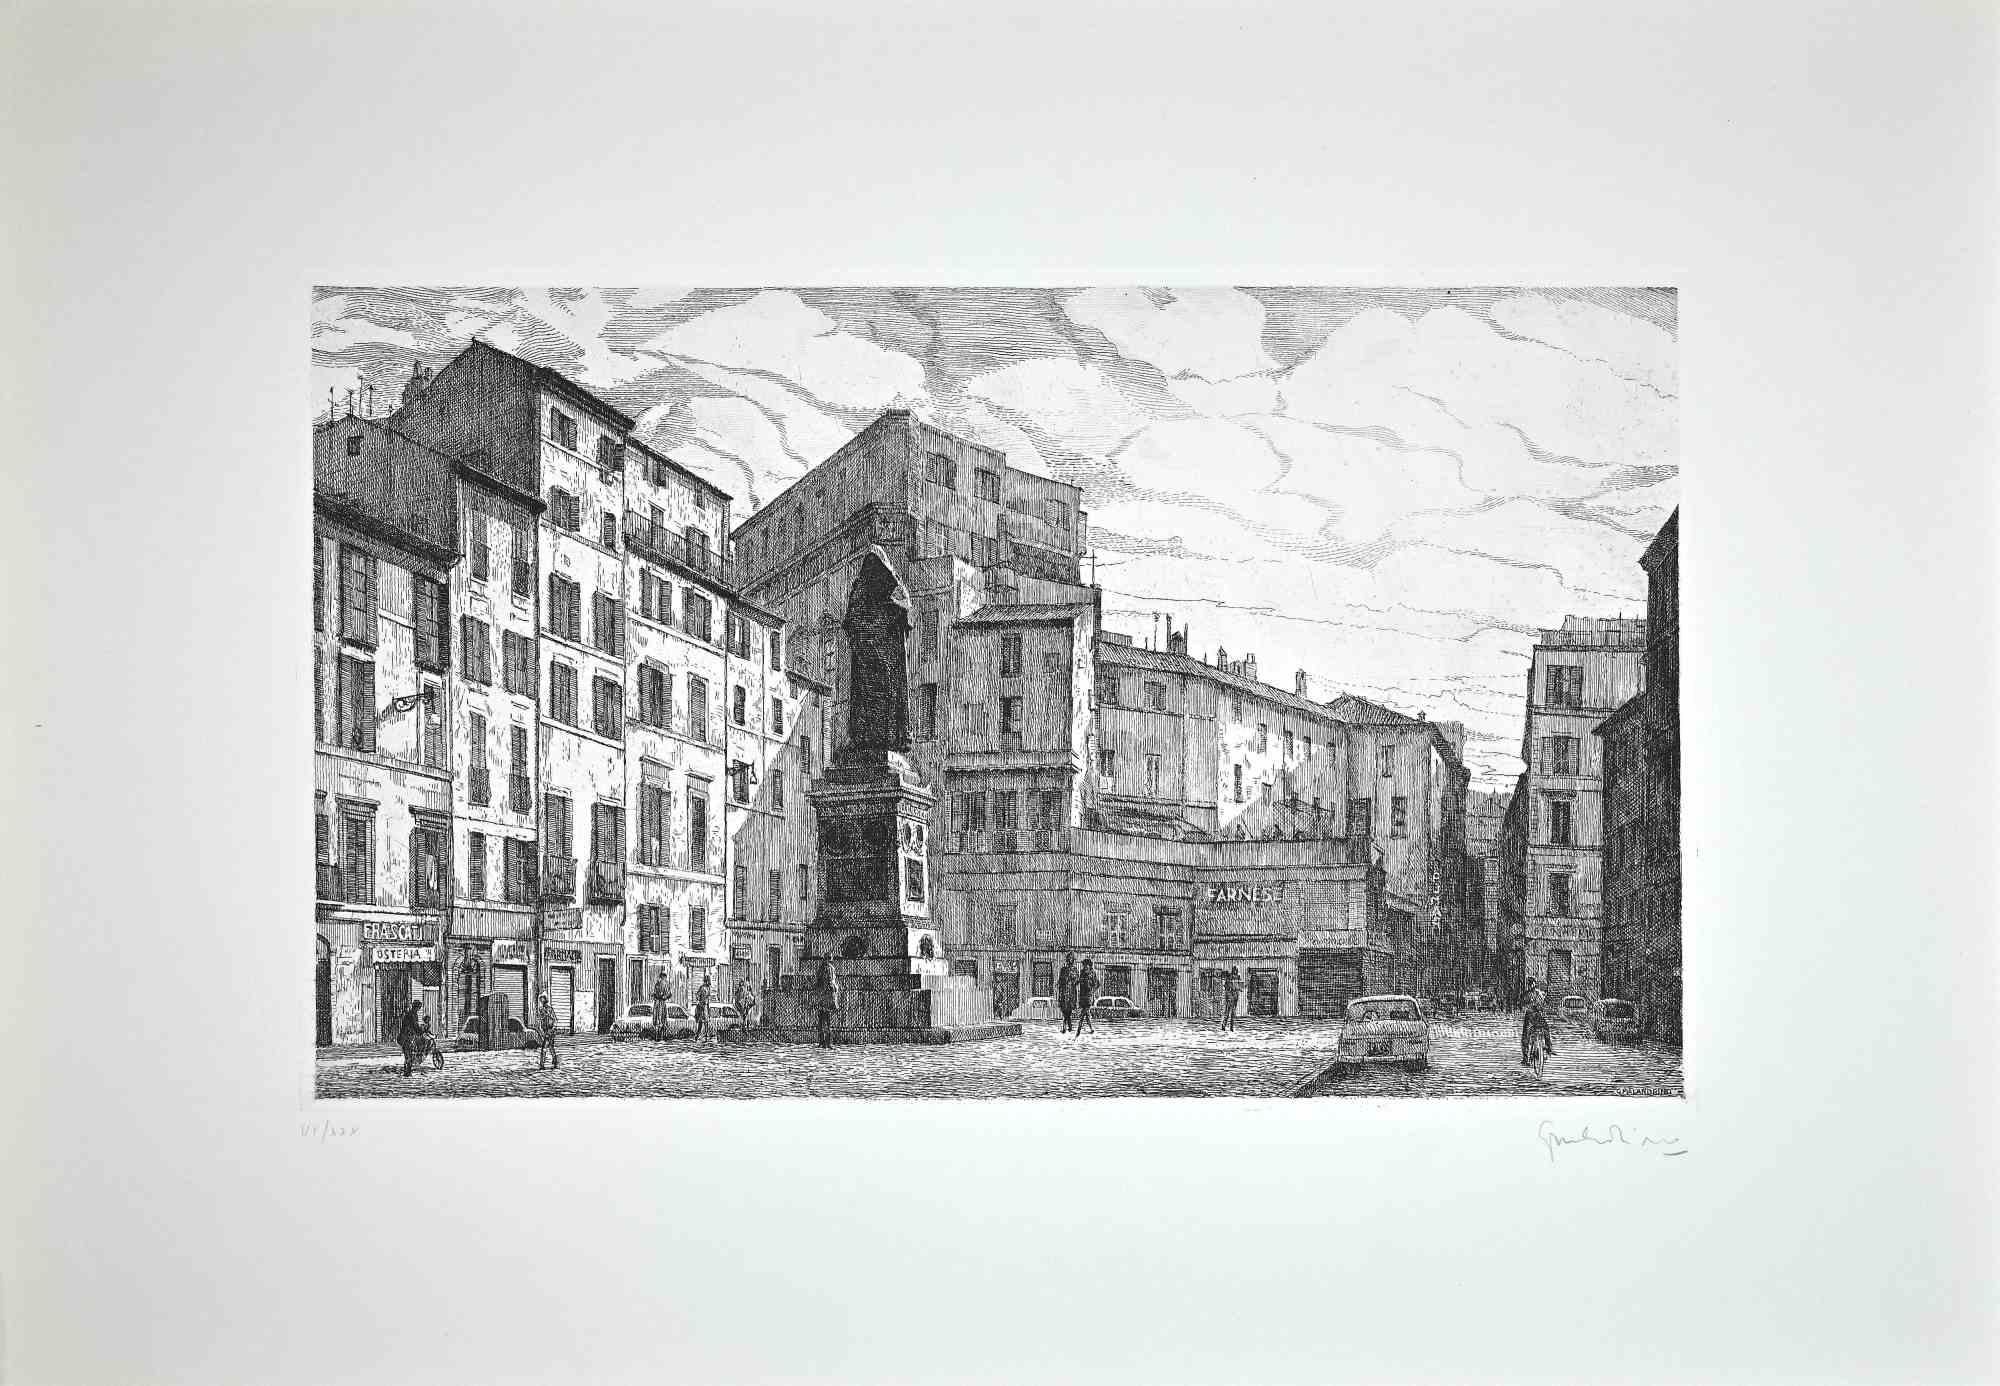 Blick auf die Piazza Campo dé Fiori  ist ein originales zeitgenössisches Kunstwerk, das 1970 von dem italienischen Künstler  Giuseppe Malandrino  (Modica, 1910 - Rom, 1979).
 
Original-Radierung.
 
Handsigniert  mit Bleistift in der rechten unteren